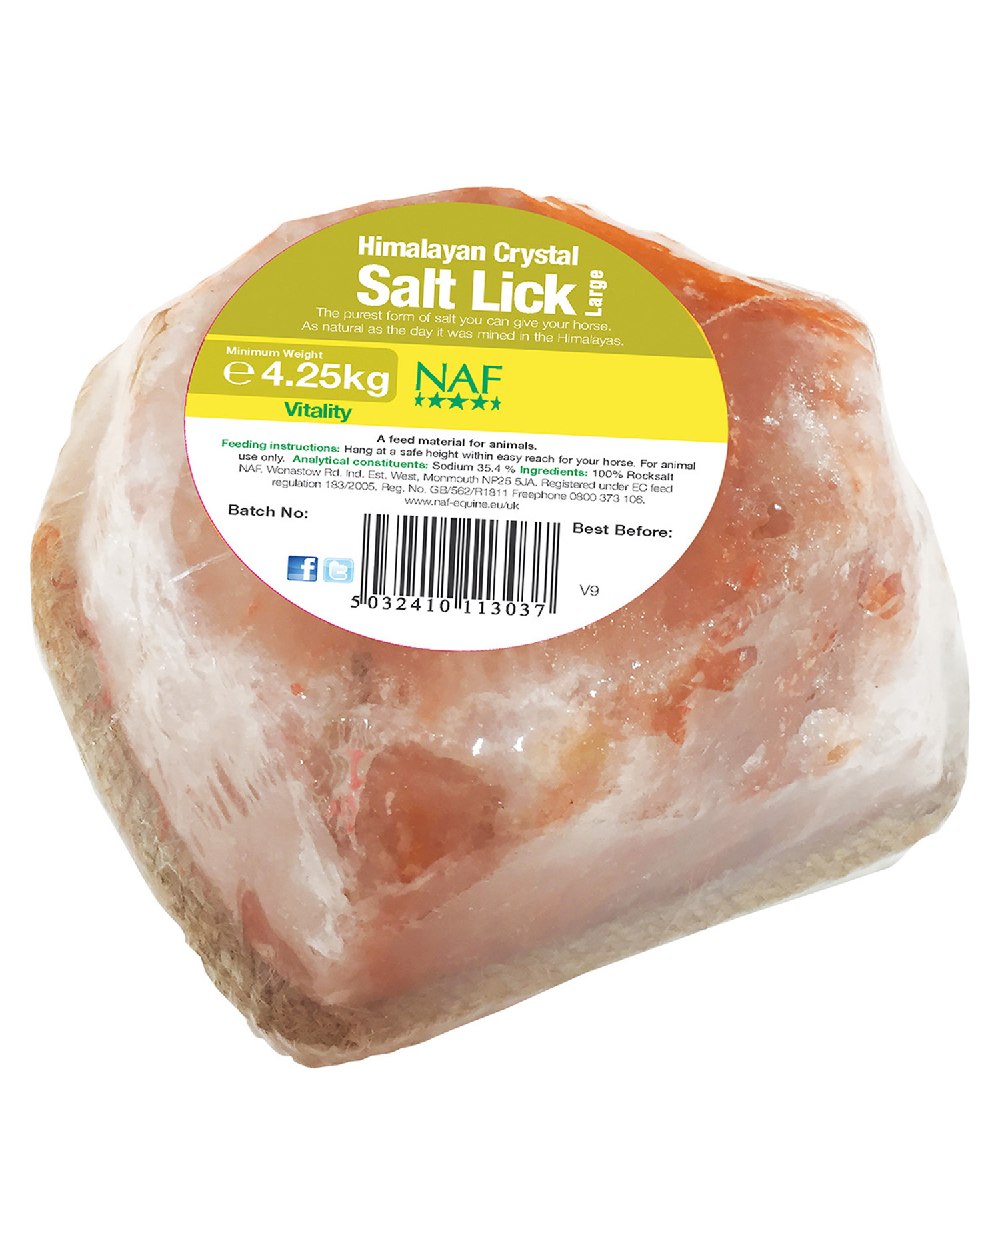 NAF Himalayan Salt Lick 4.25kg on white background